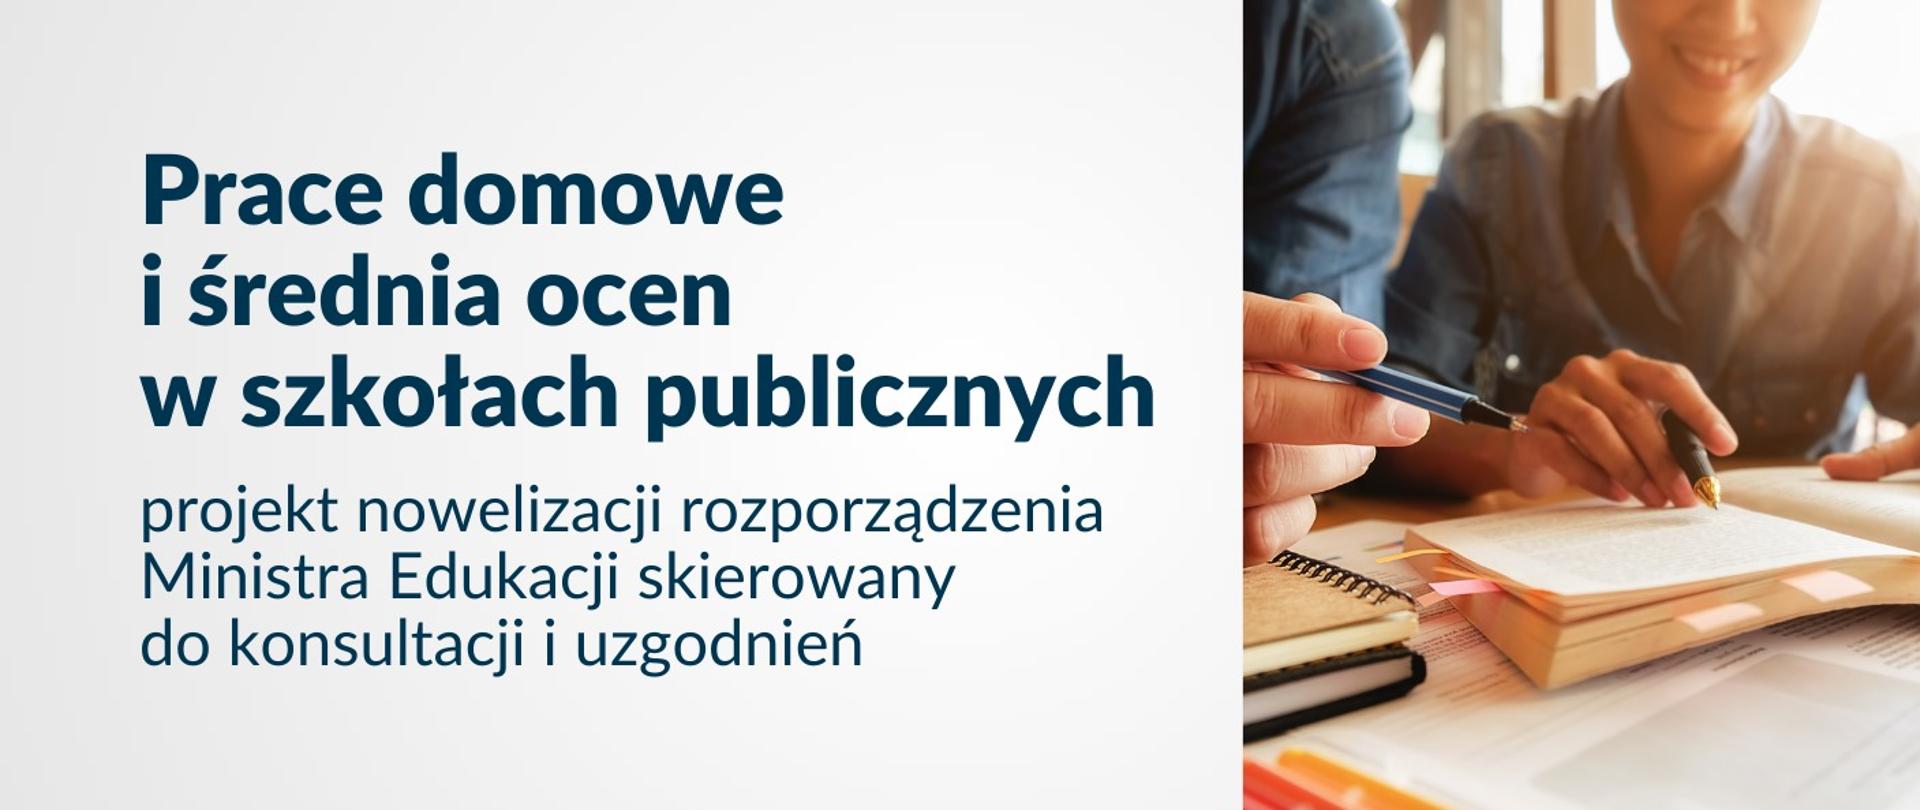 Grafika z tekstem: Prace domowe i średnia ocen w szkołach publicznych projekt nowelizacji rozporządzenia Ministra Edukacji skierowany do konsultacji i uzgodnień